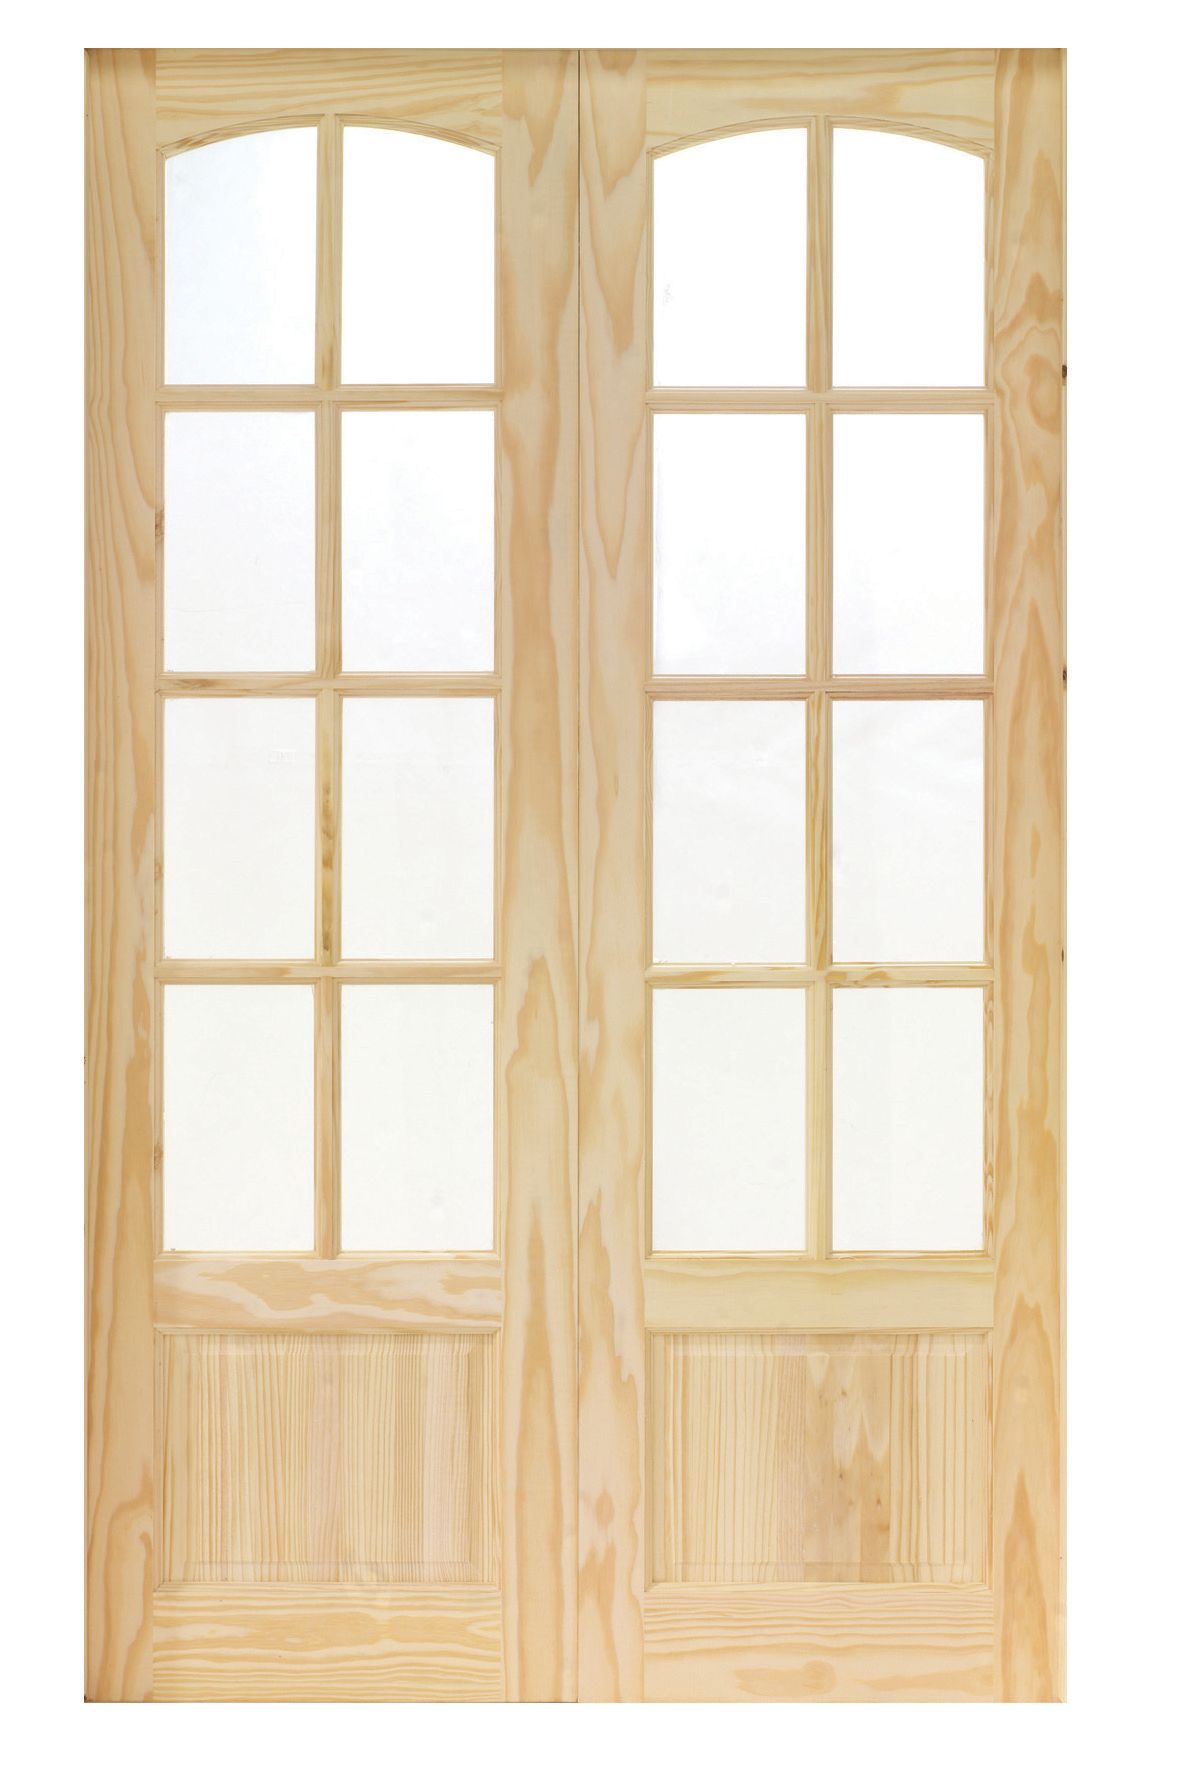 Wickes Newland Glazed Pine 8 Lite Internal French Doors - 1981 x 1170mm